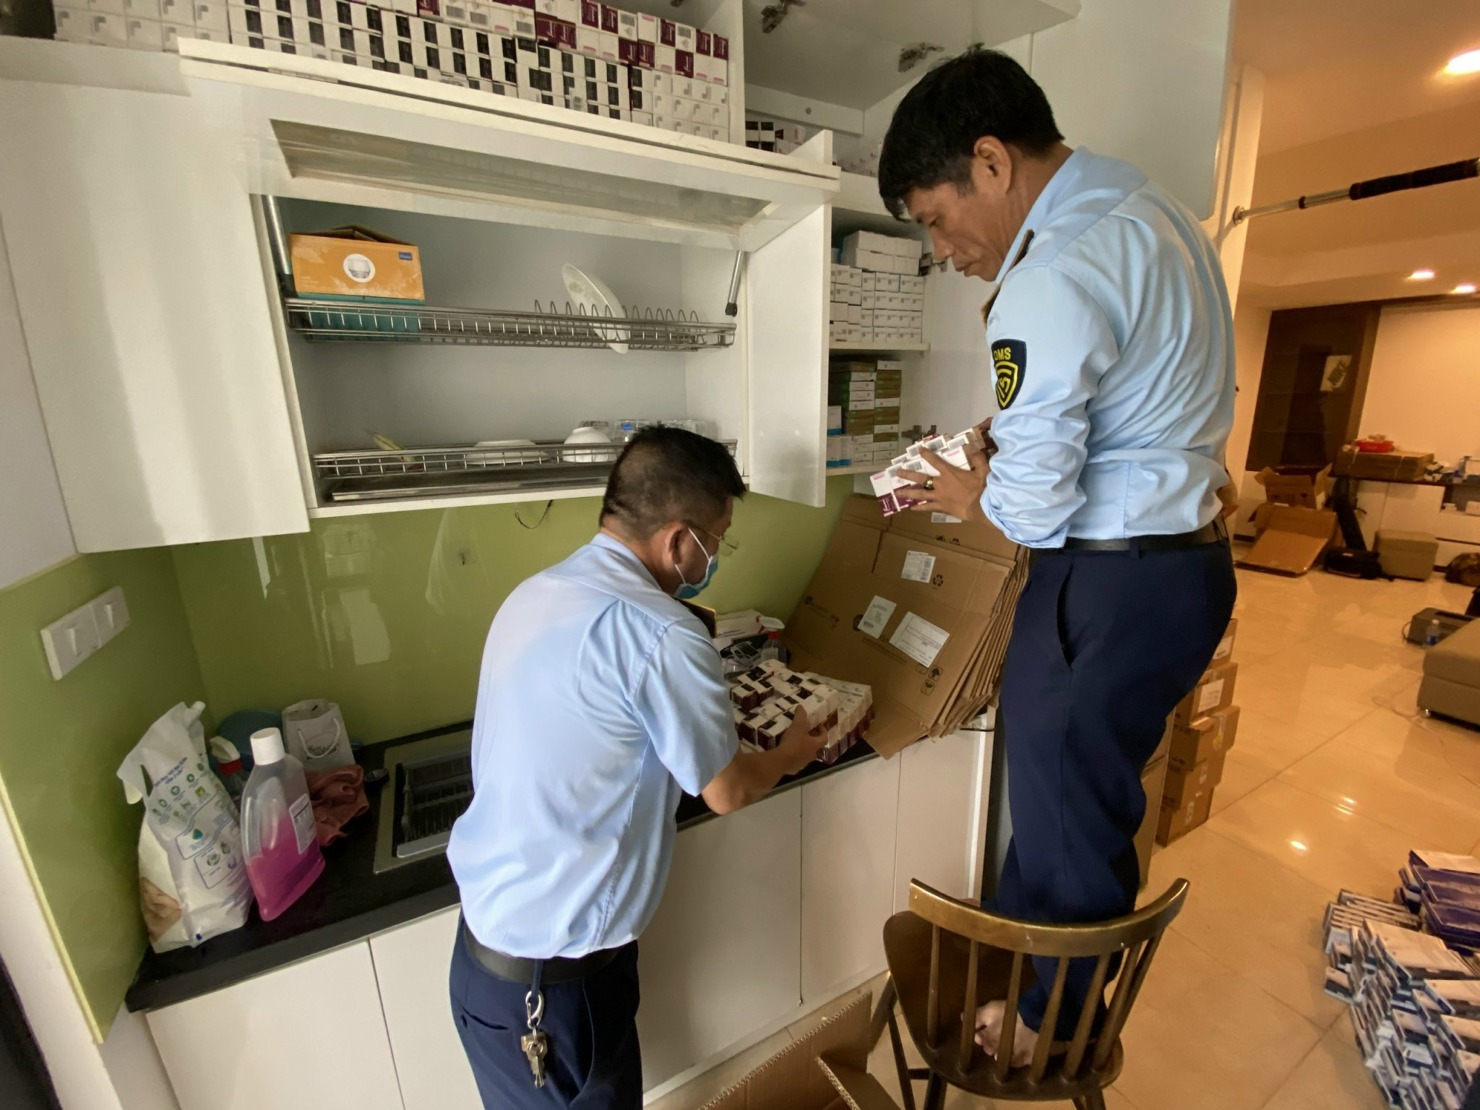 Phát hiện kho thuốc tây bất hợp pháp tại căn hộ chung cư cao cấp ở Hà Nội - Ảnh 2